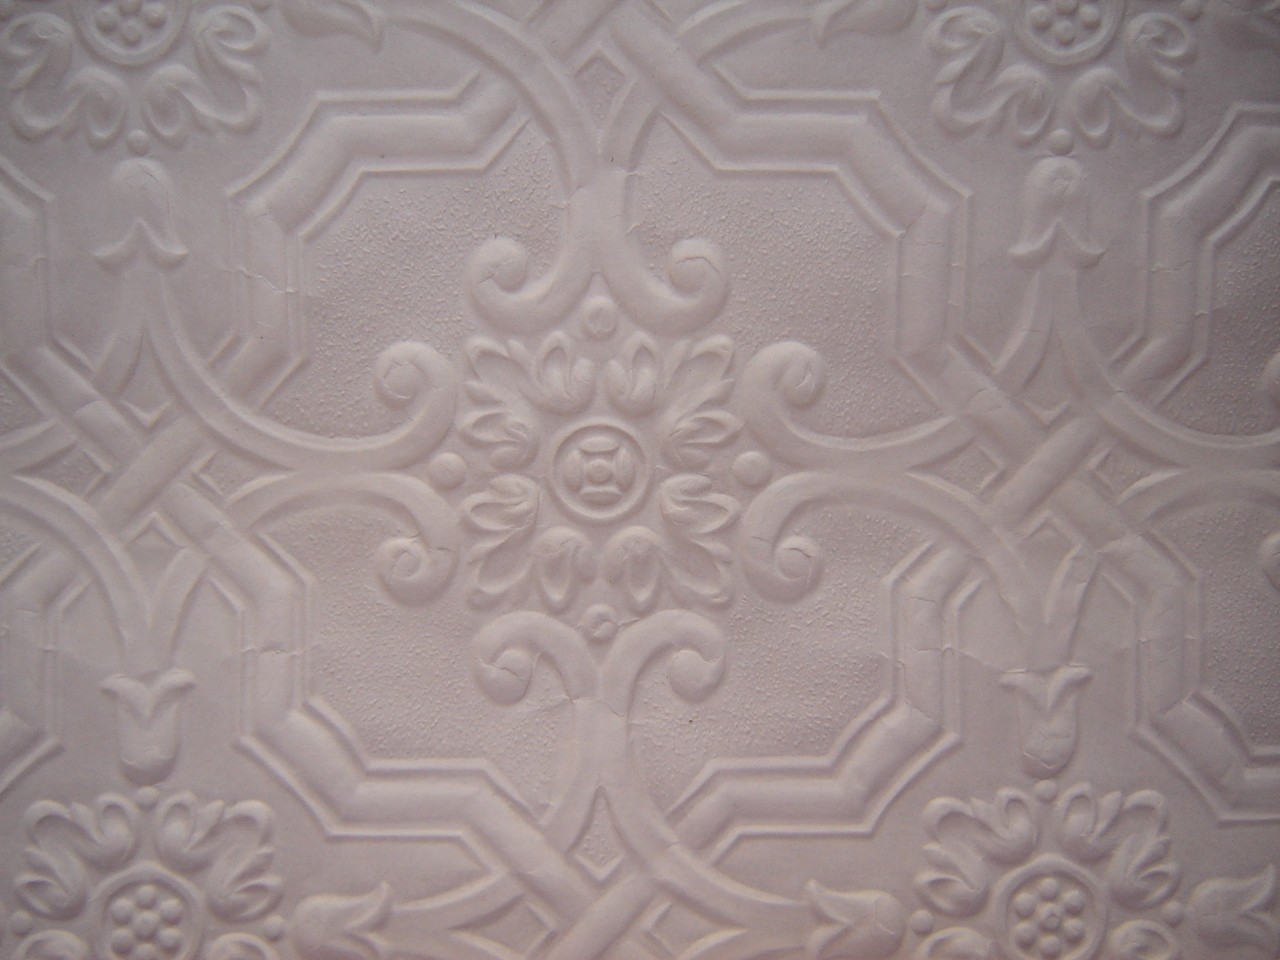 Ceiling Tile Wallpaper Paintable Embossed 1 by WendysVintageShop